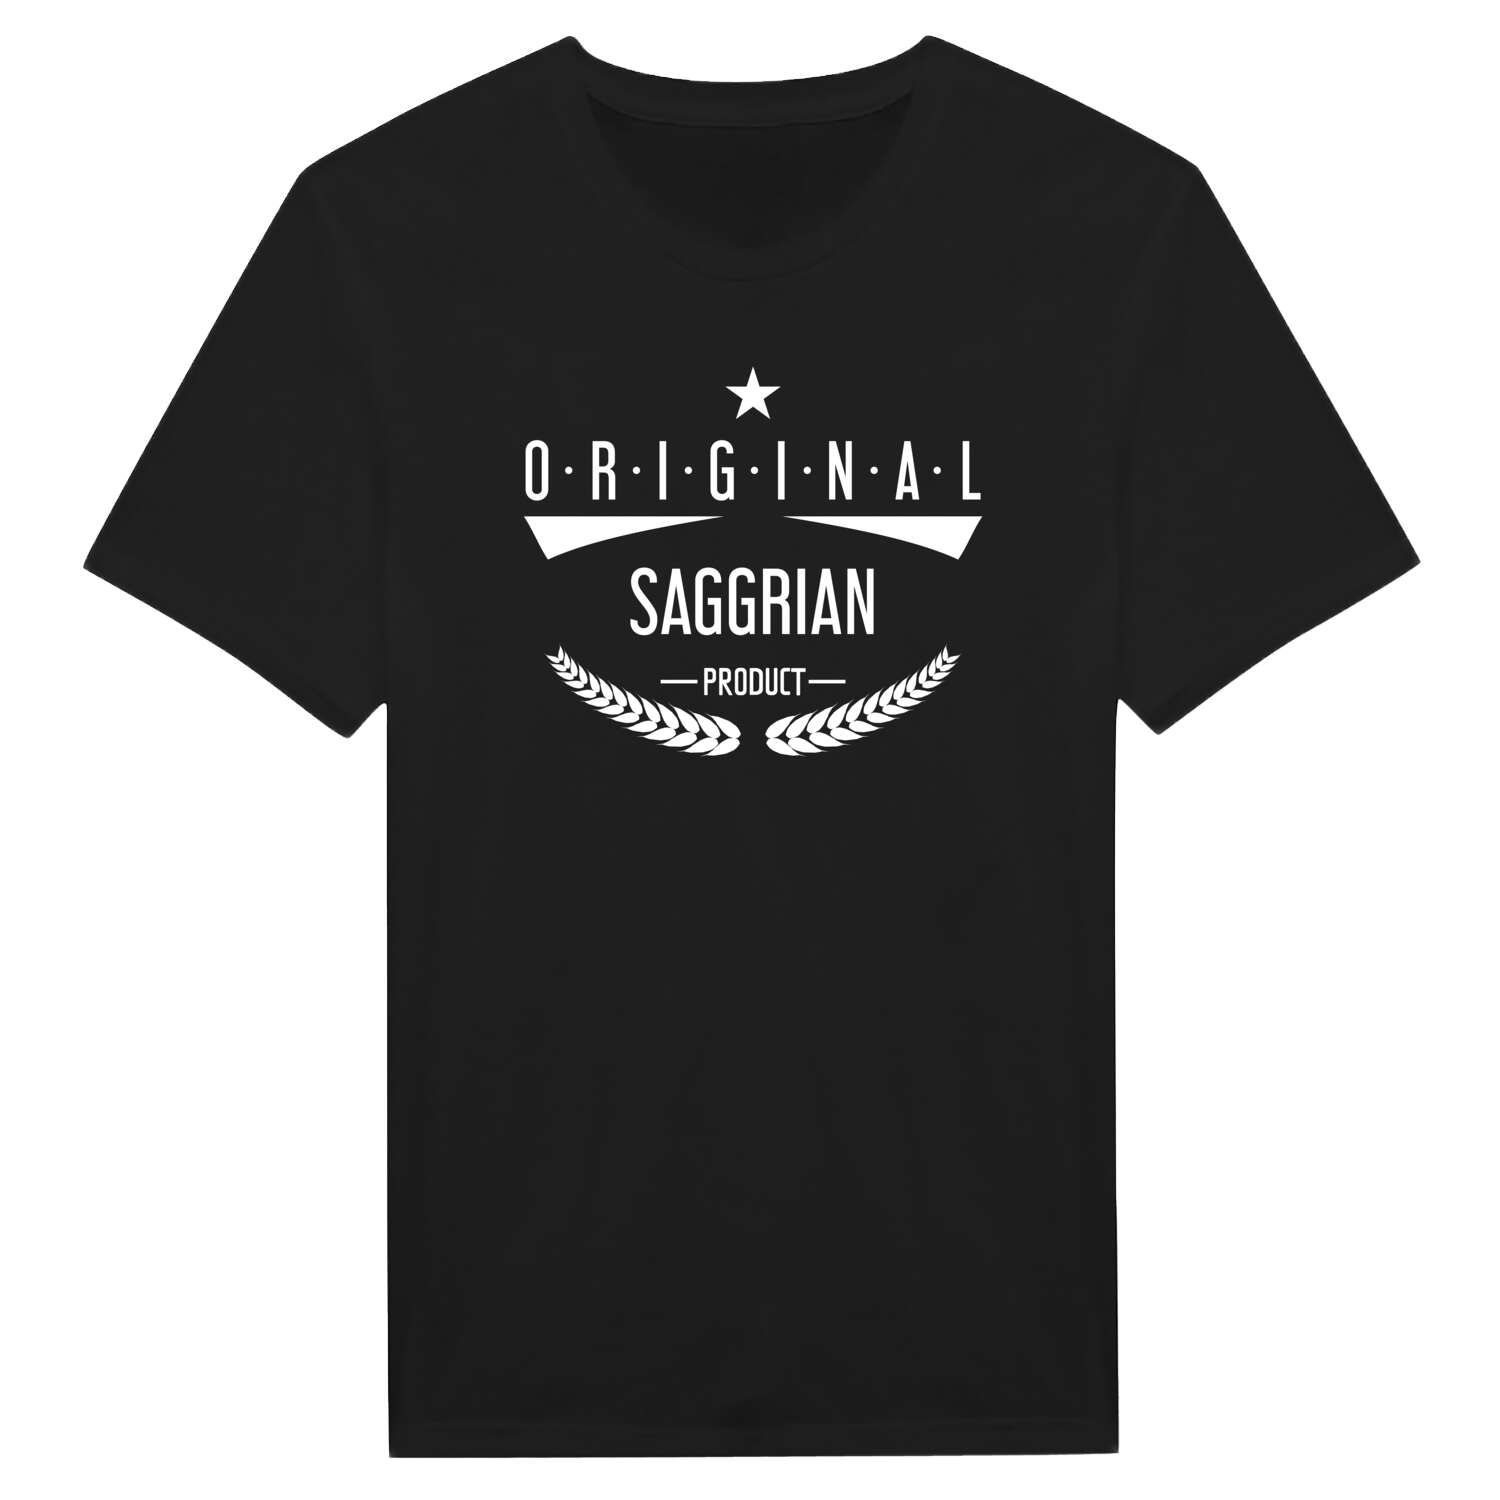 Saggrian T-Shirt »Original Product«